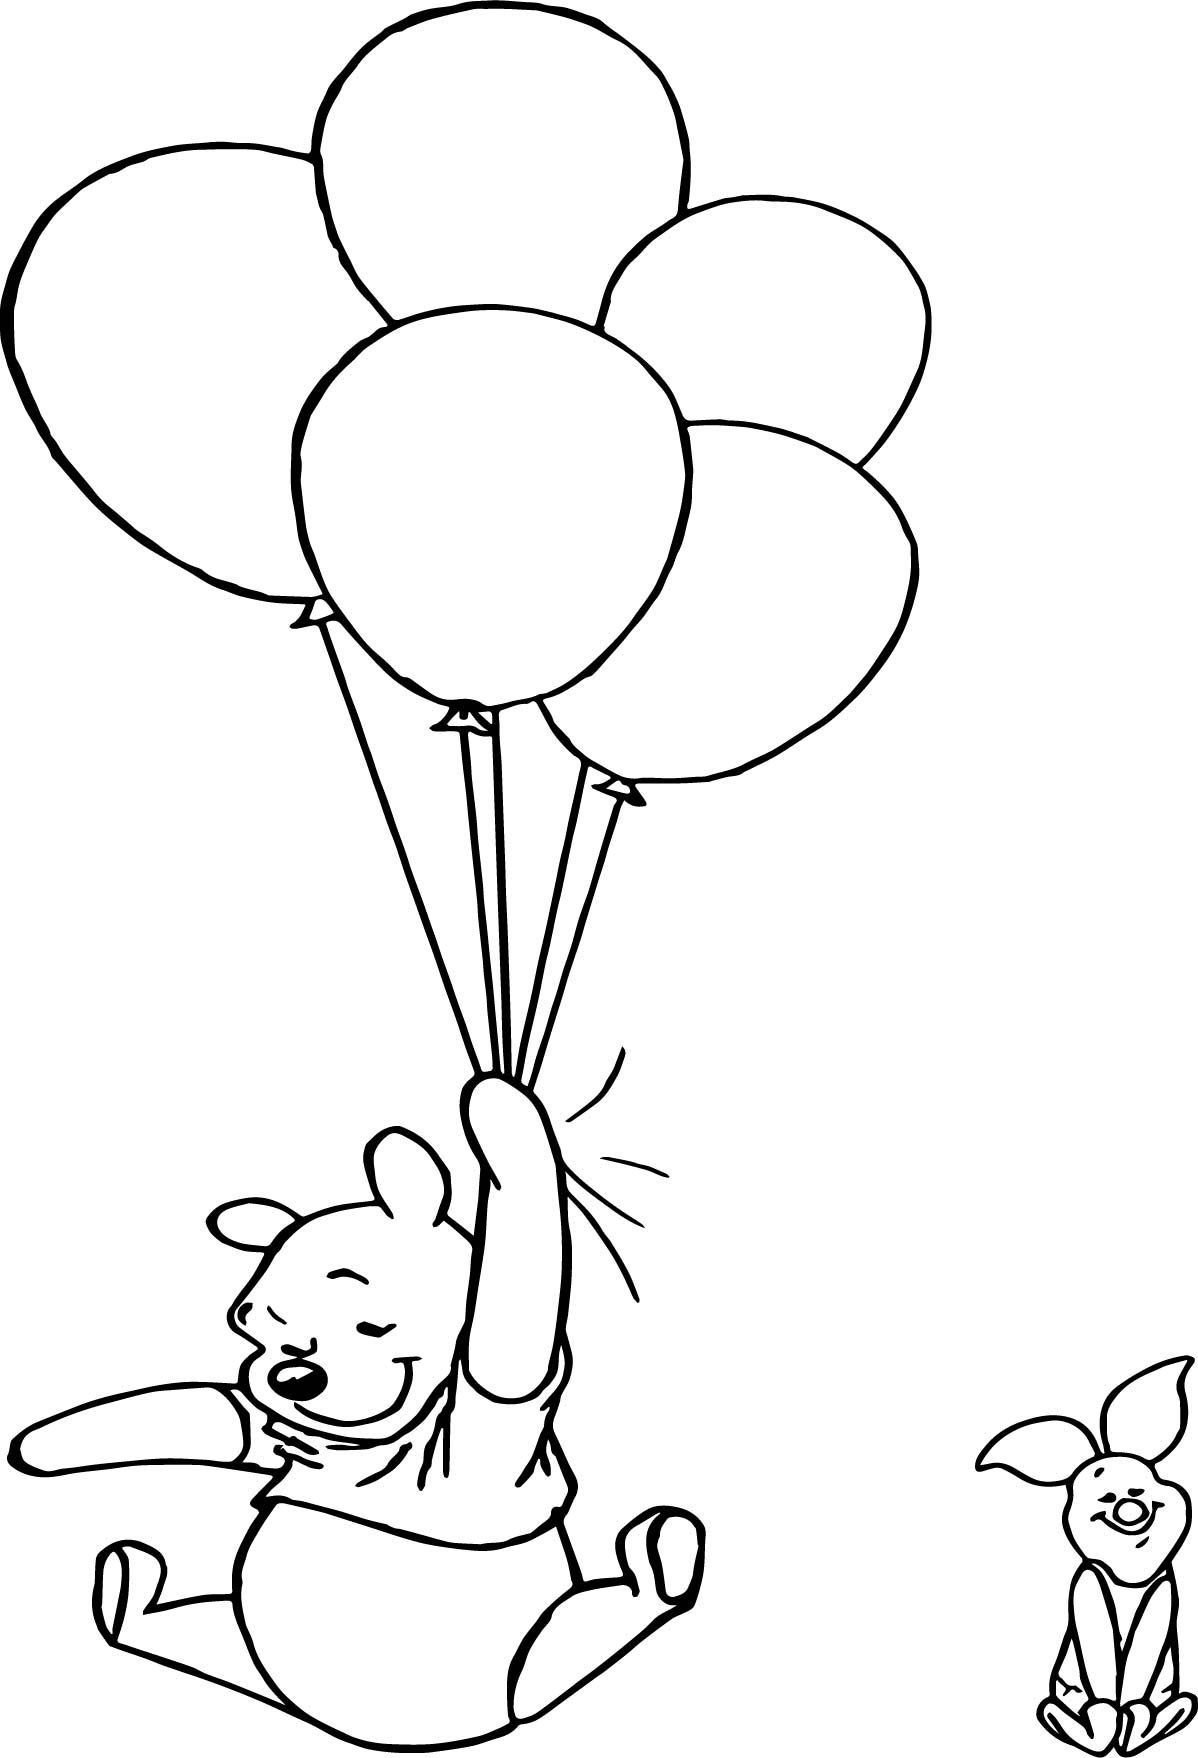 Tranh tô màu gấu Pooh cầm chùm bóng bay